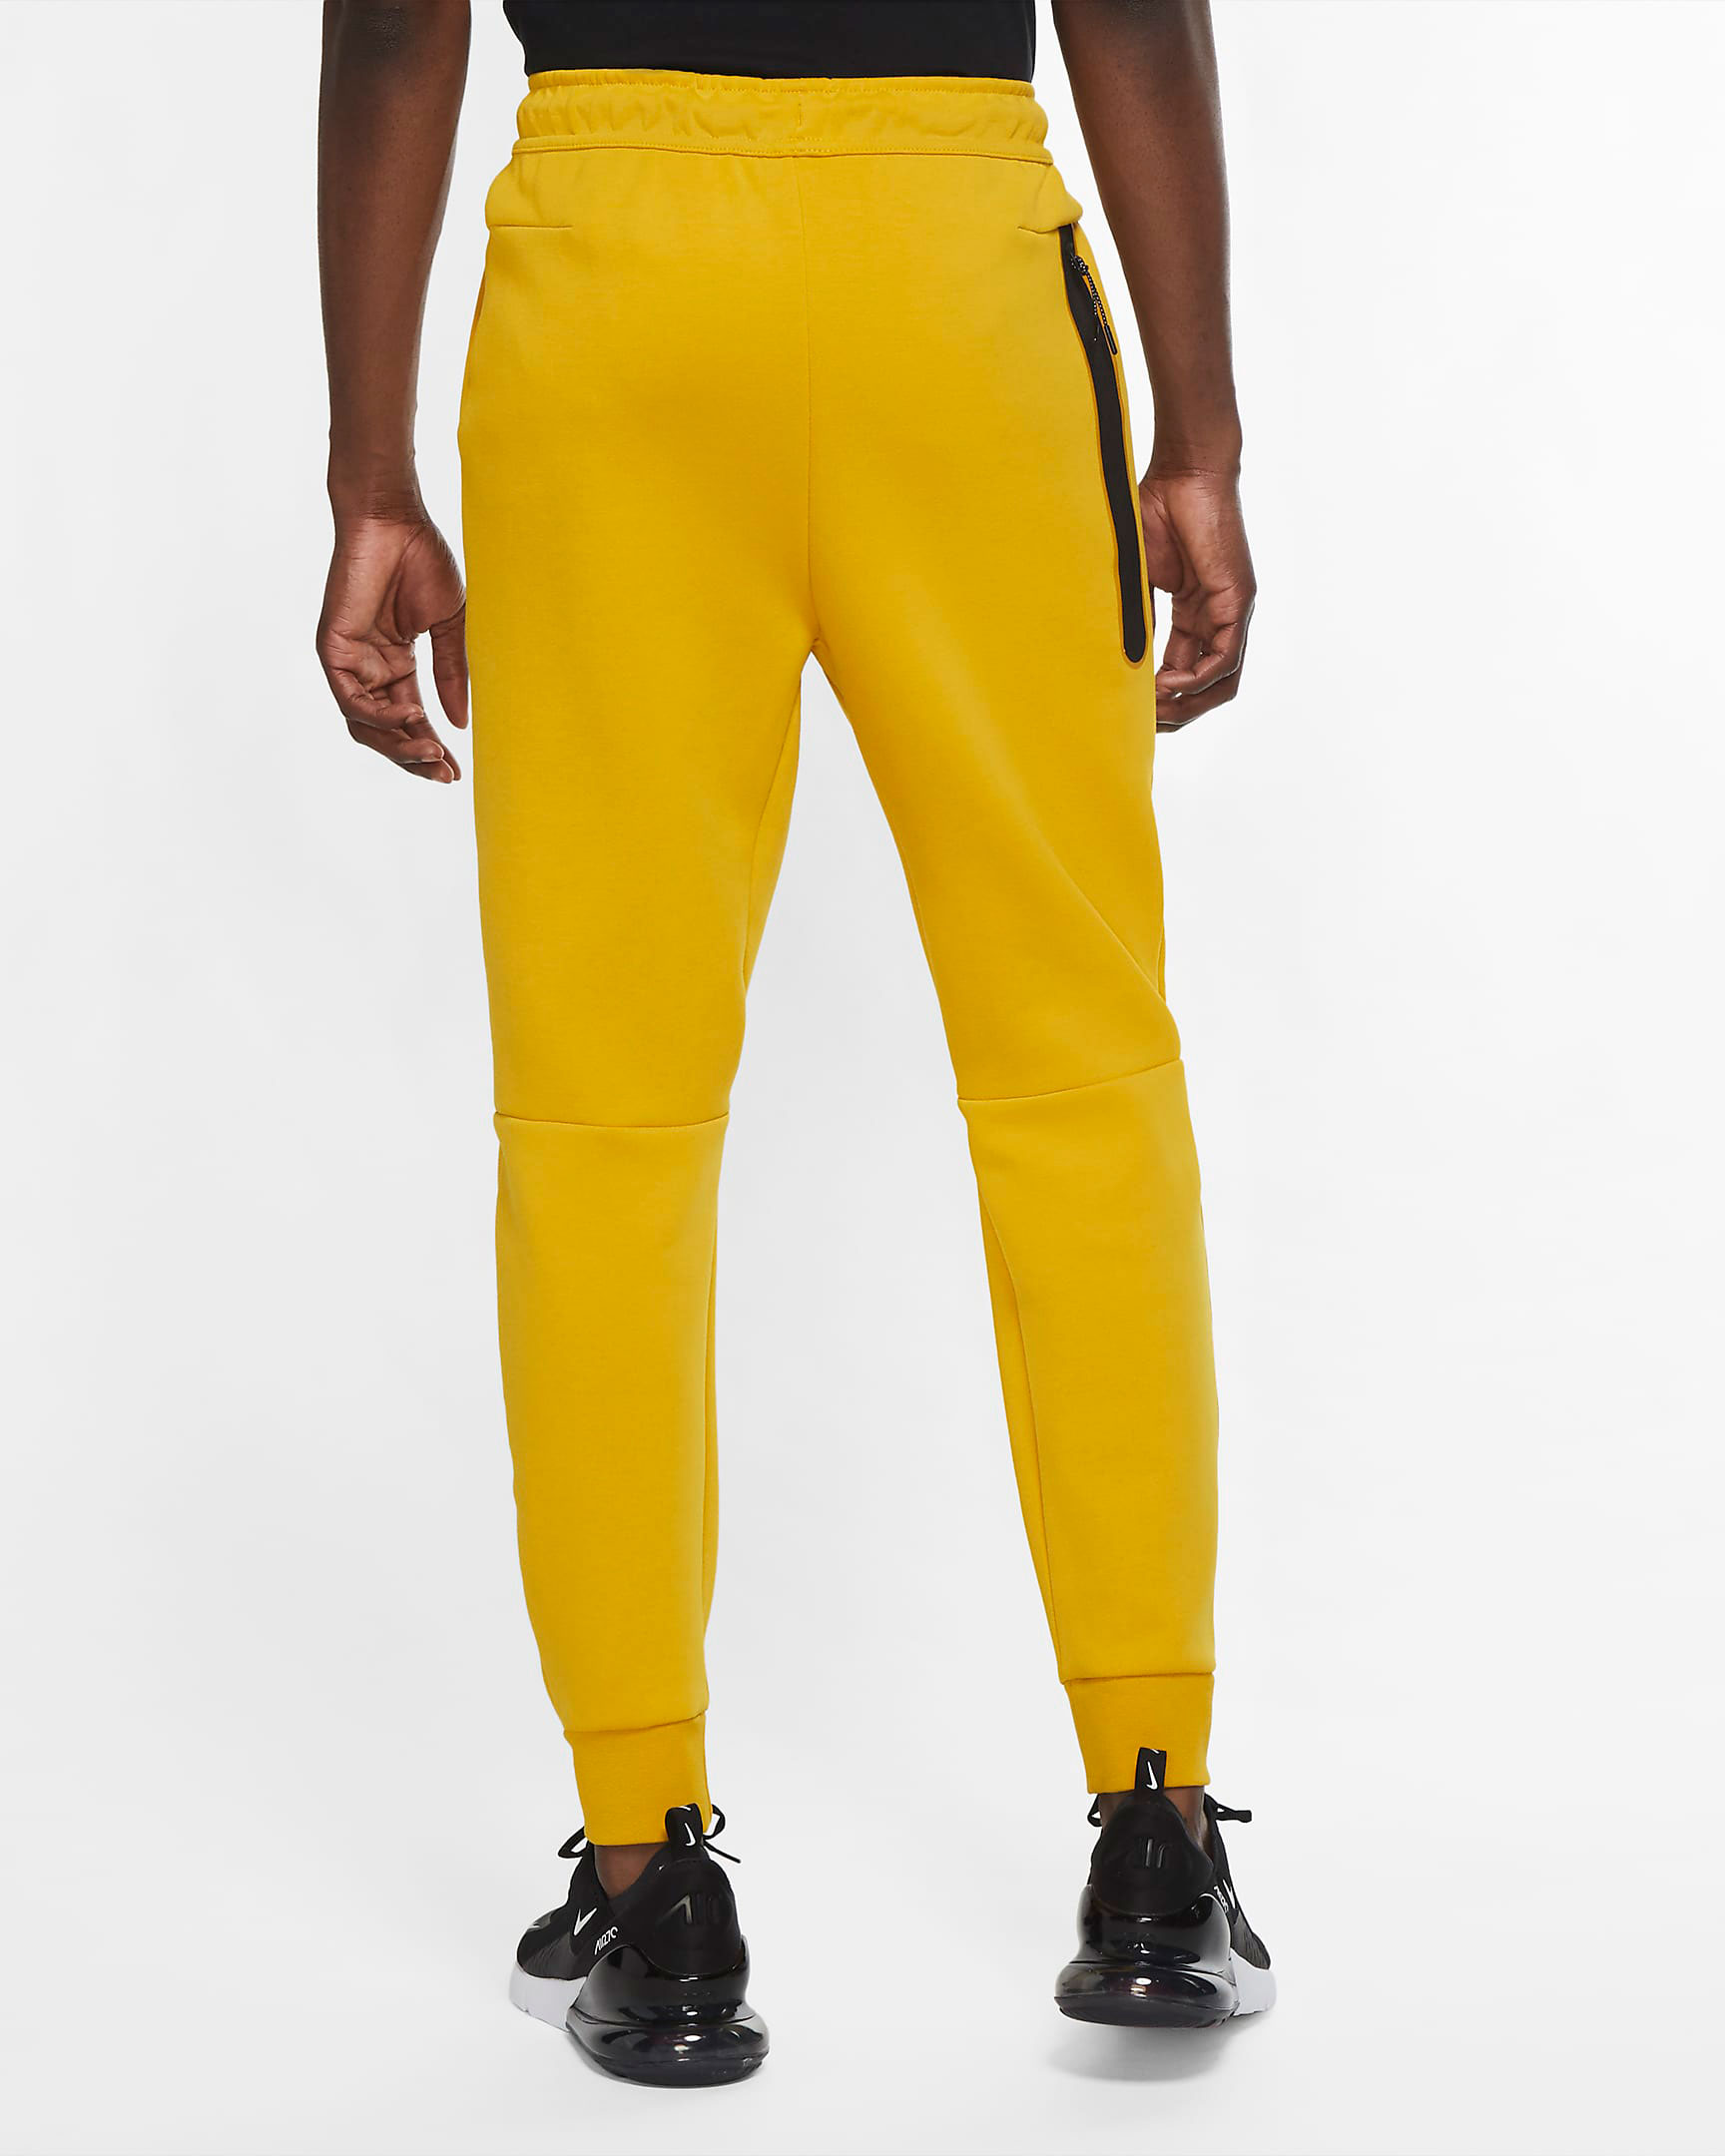 nike-tech-fleece-pants-yellow-sulfur-2